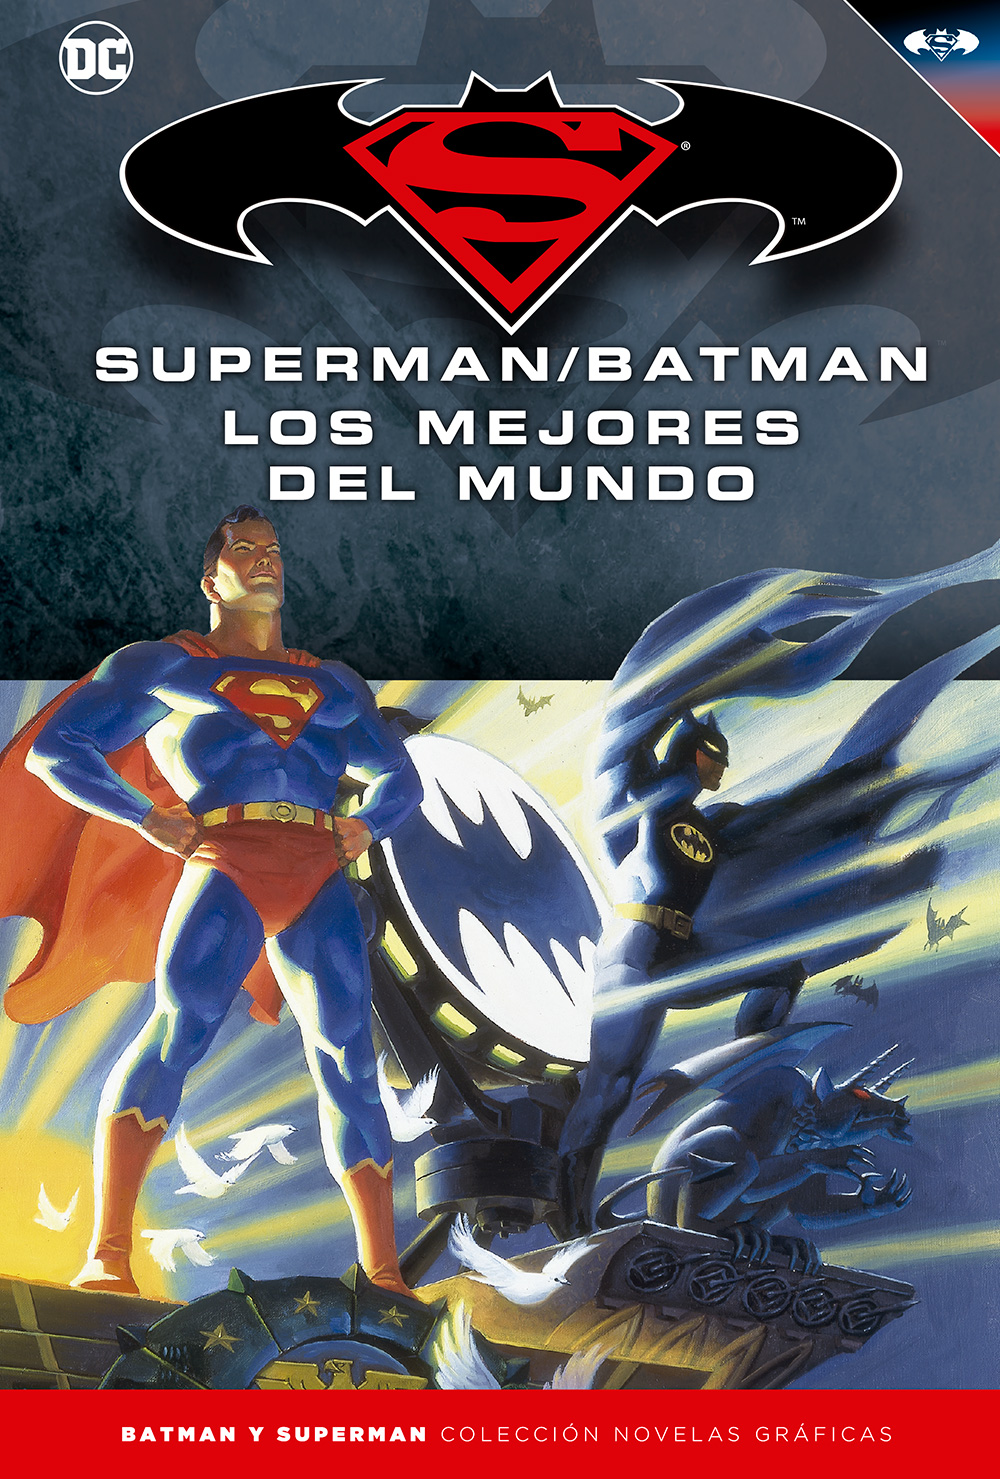 2 - [DC - Salvat] Batman y Superman: Colección Novelas Gráficas - Página 7 Portada_BMSM_16_LosMejoresdelMundo